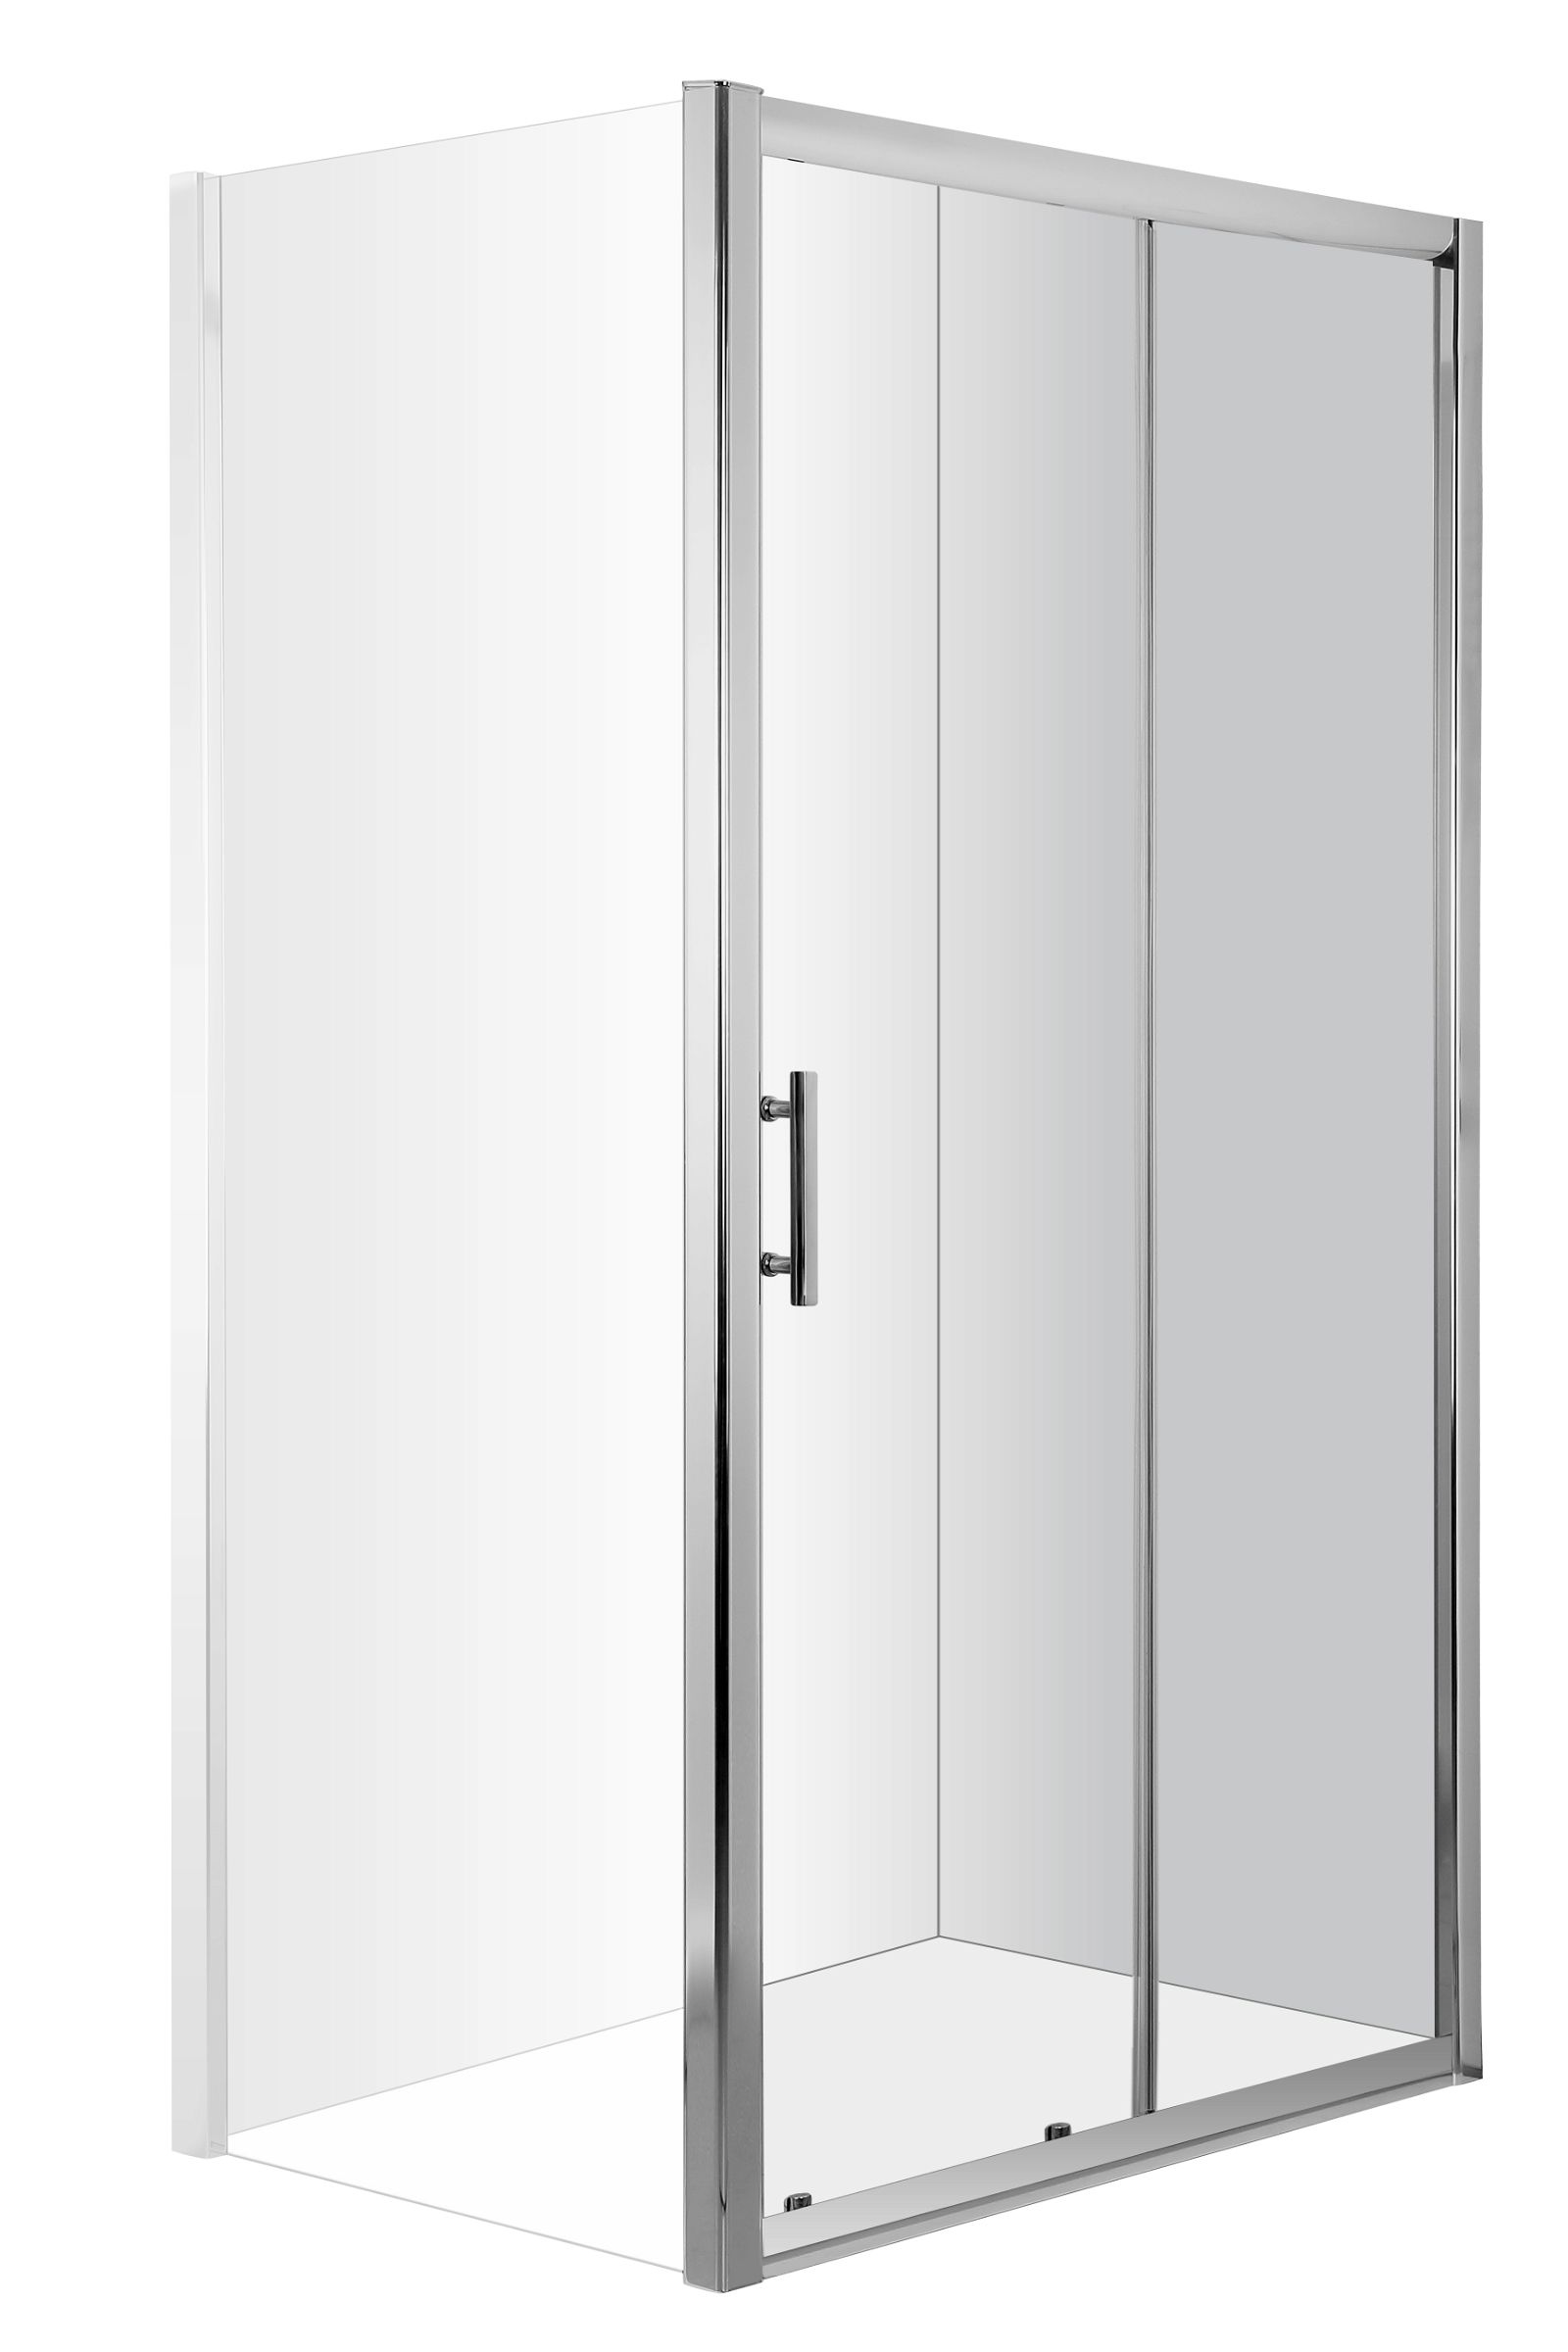 Drzwi prysznicowe wnękowe 160 cm - przesuwne - KTC_016P - Główne zdjęcie produktowe